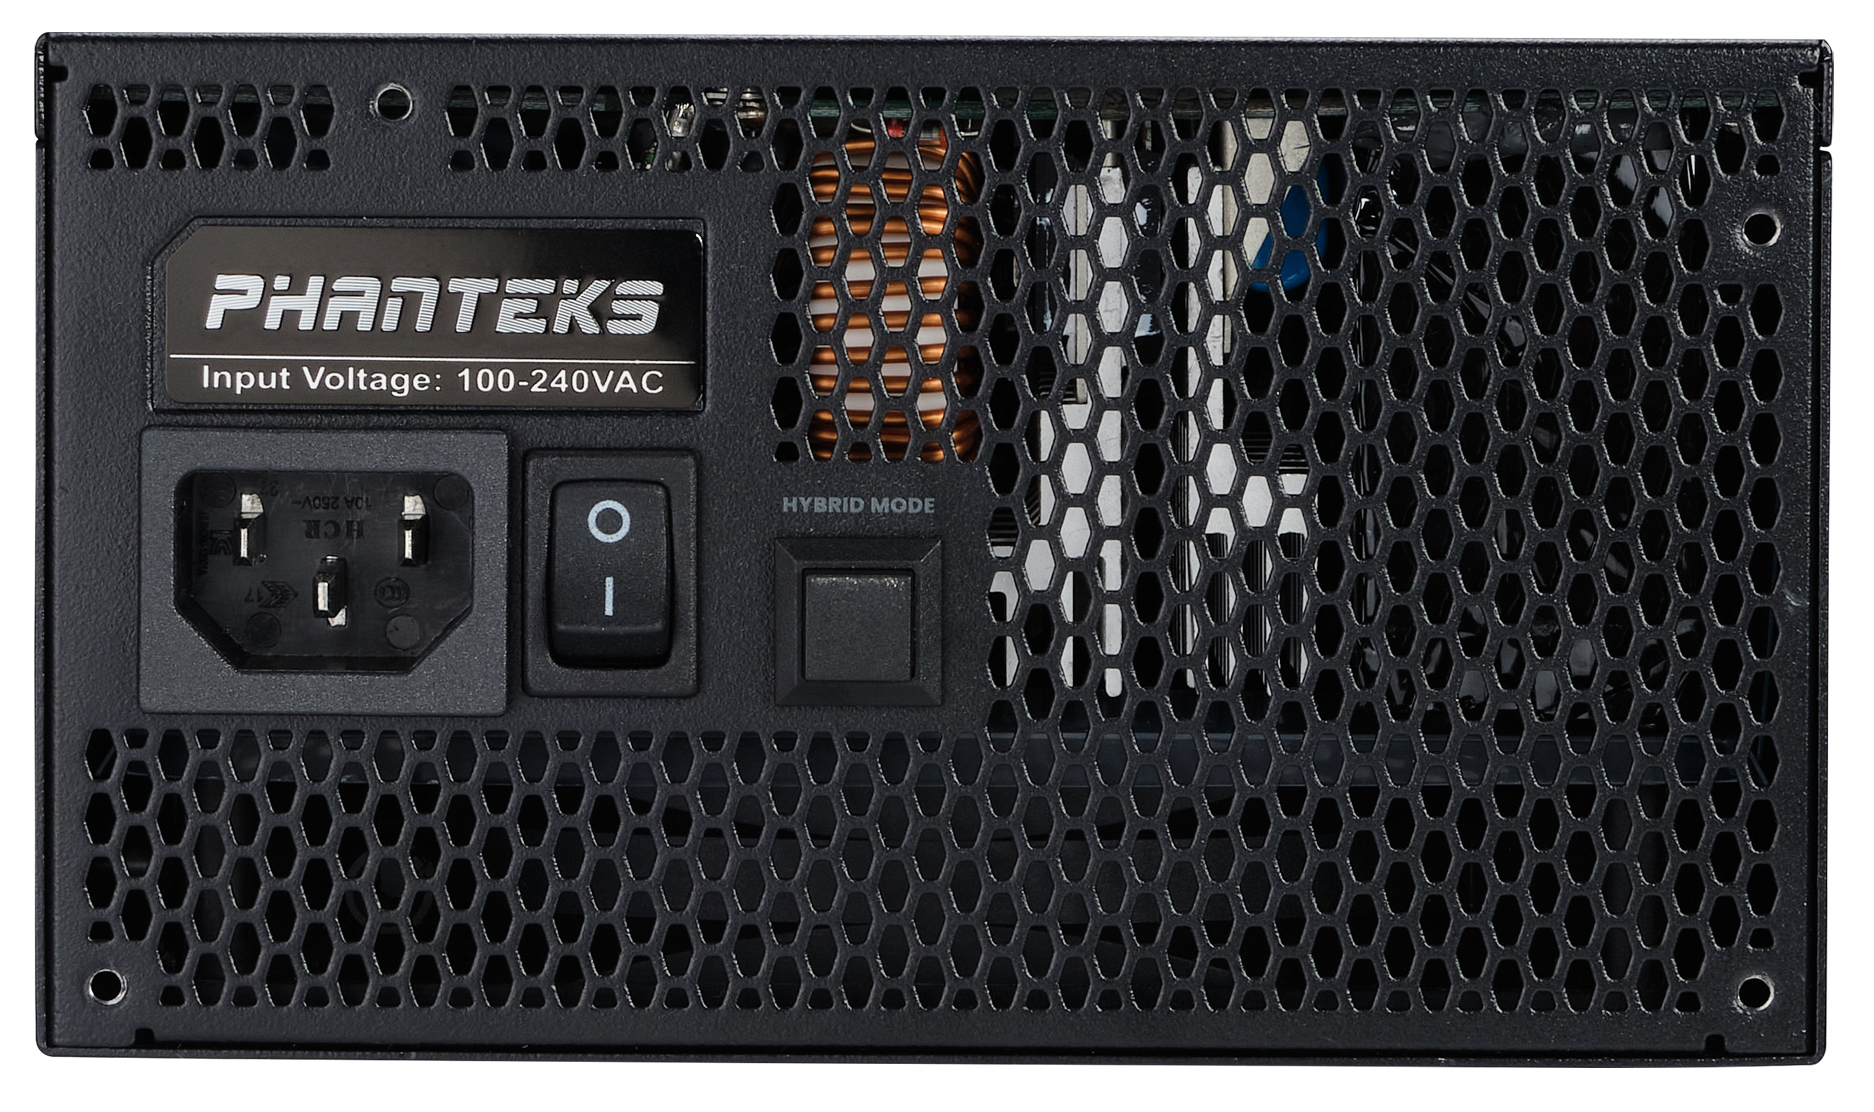 Phanteks - Fonte Modular Phanteks Revolt ATX 3.0 PCIe 5.0 1200W Platinum Preta (Sem Cabos Incluídos)